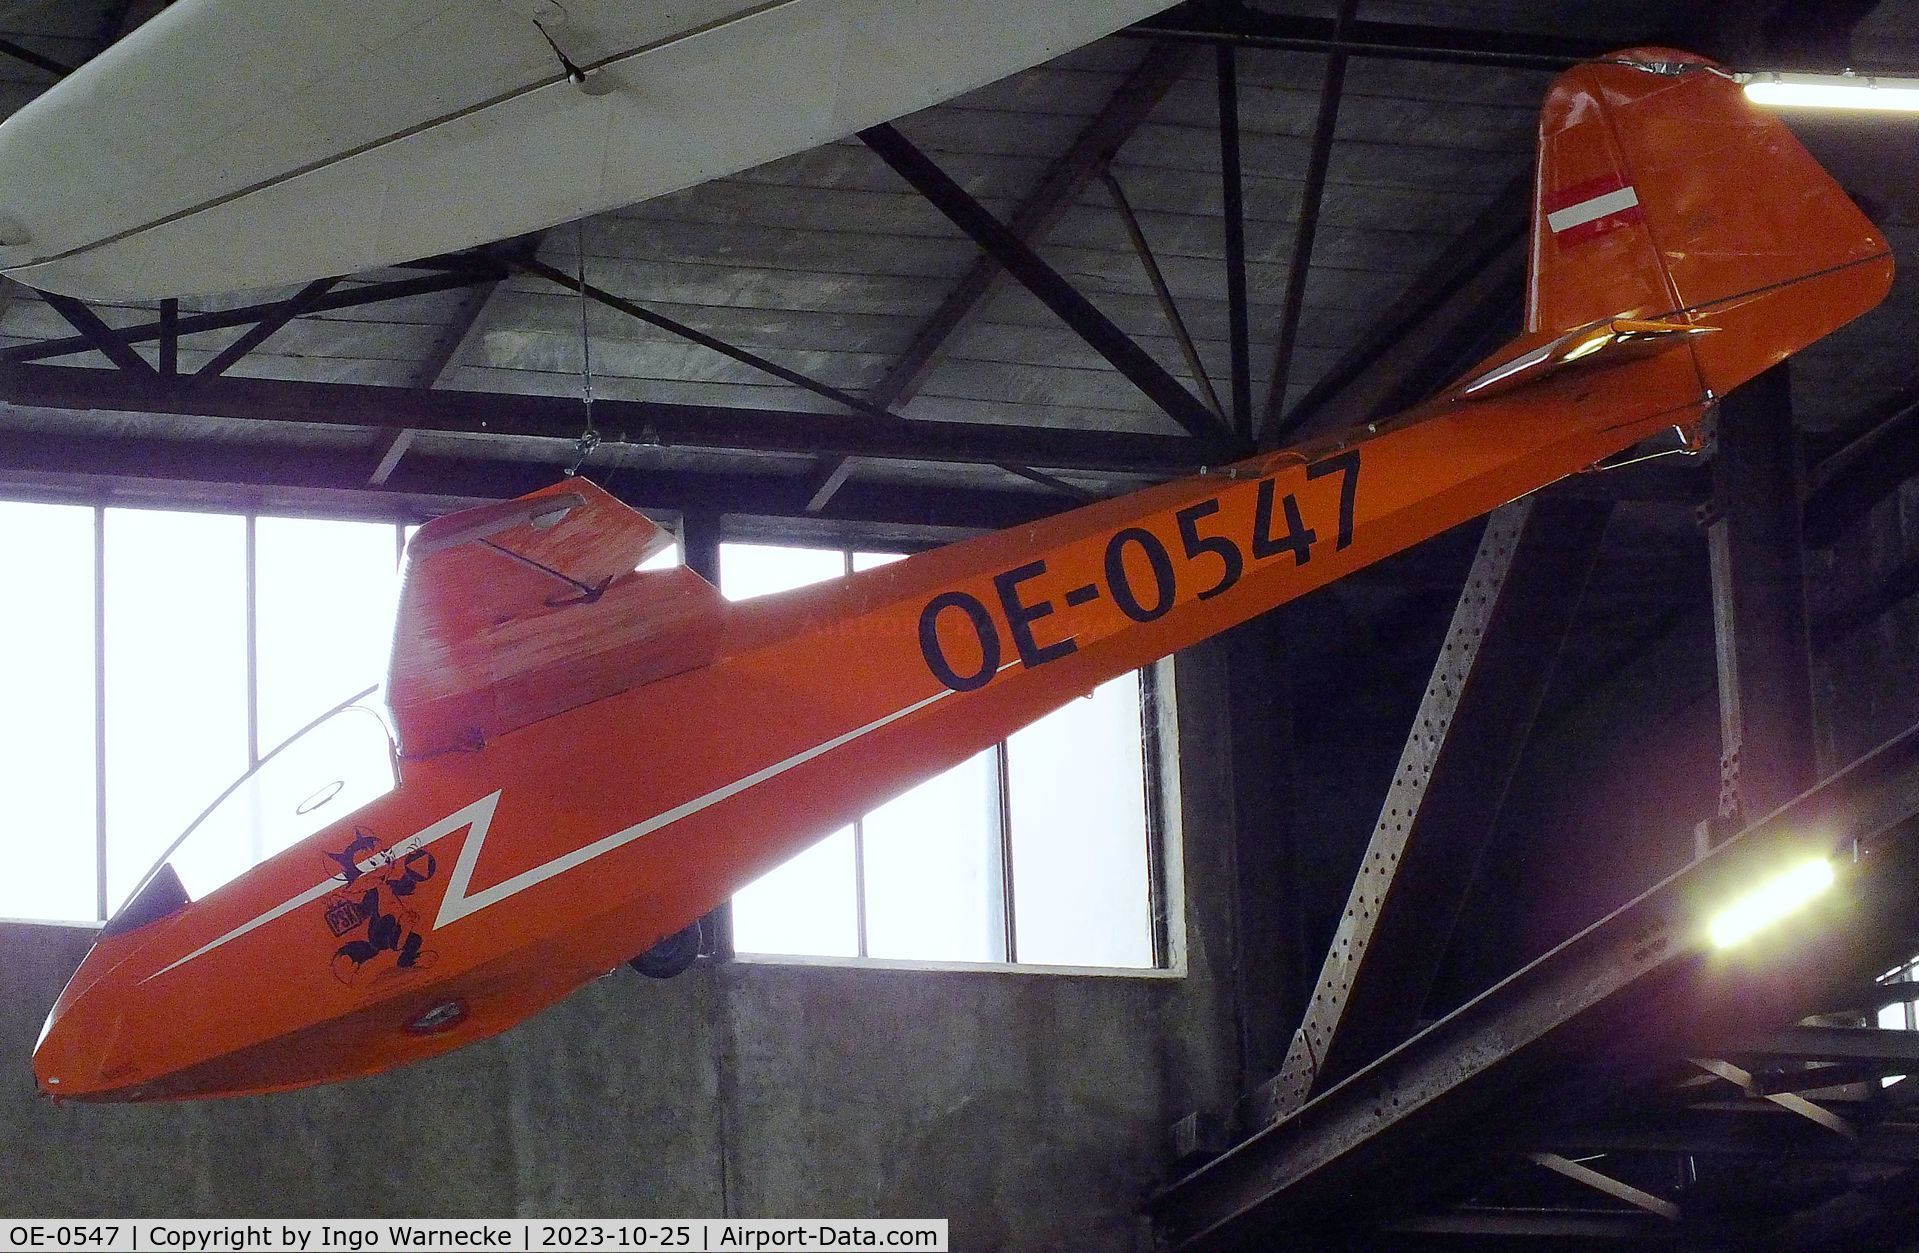 OE-0547, Scheibe L-Spatz 55 C/N R232/H244, Scheibe L-Spatz 55 at the Militärluftfahrt-Museum (Museum of Austrian Military Aviation), Zeltweg